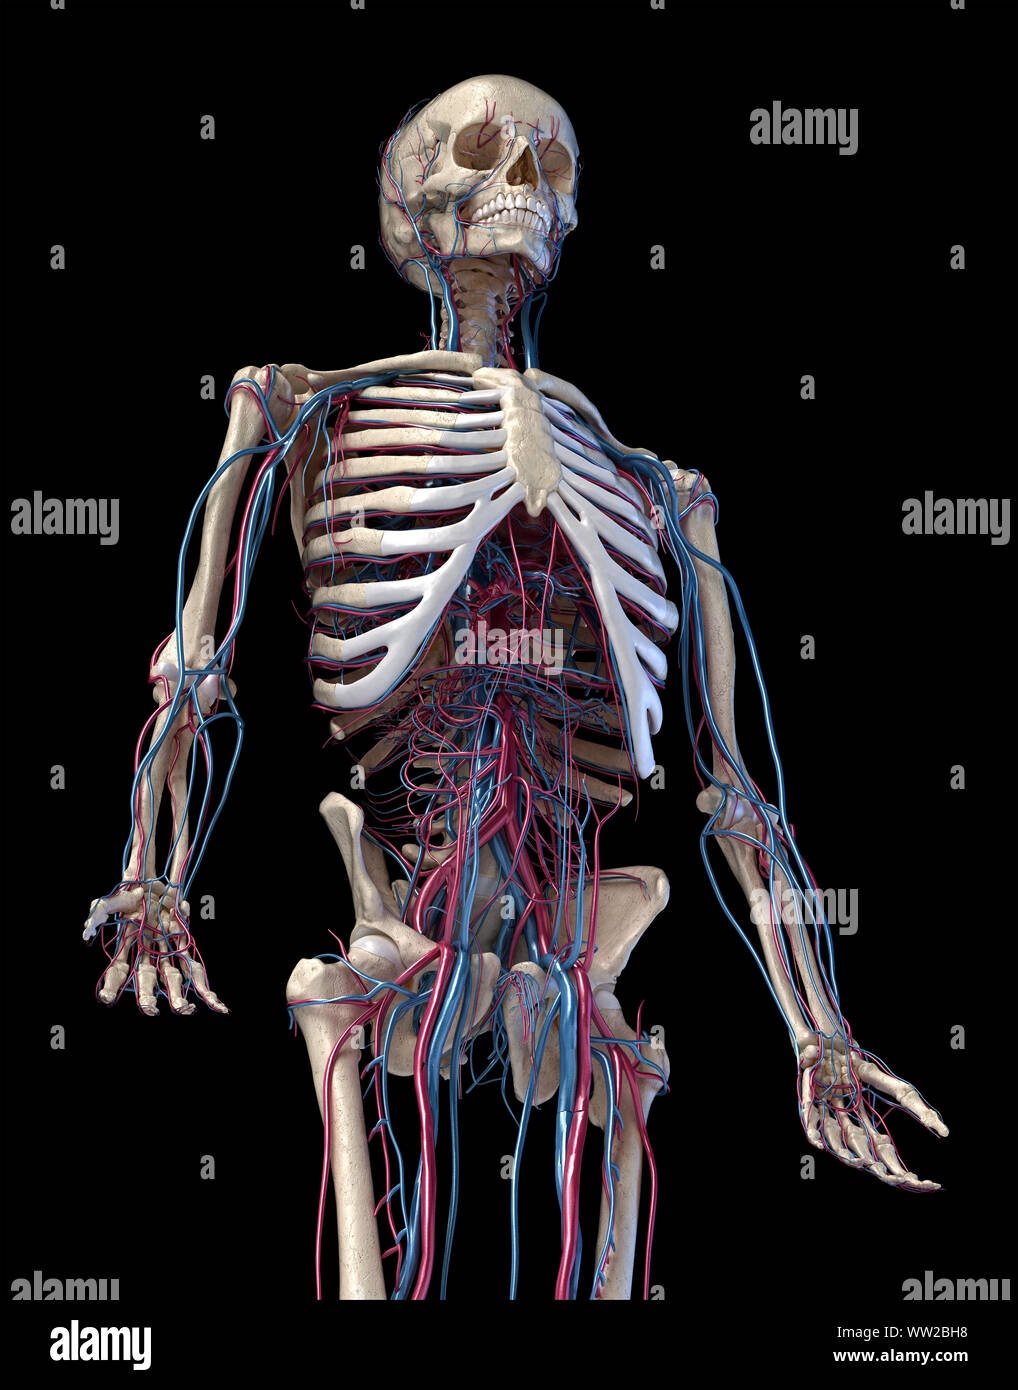 L'anatomie humaine, 3d illustration du squelette avec système cardiovasculaire. Vue en perspective d'3/4 de la partie supérieure, à l'avant. Sur fond noir. Banque D'Images